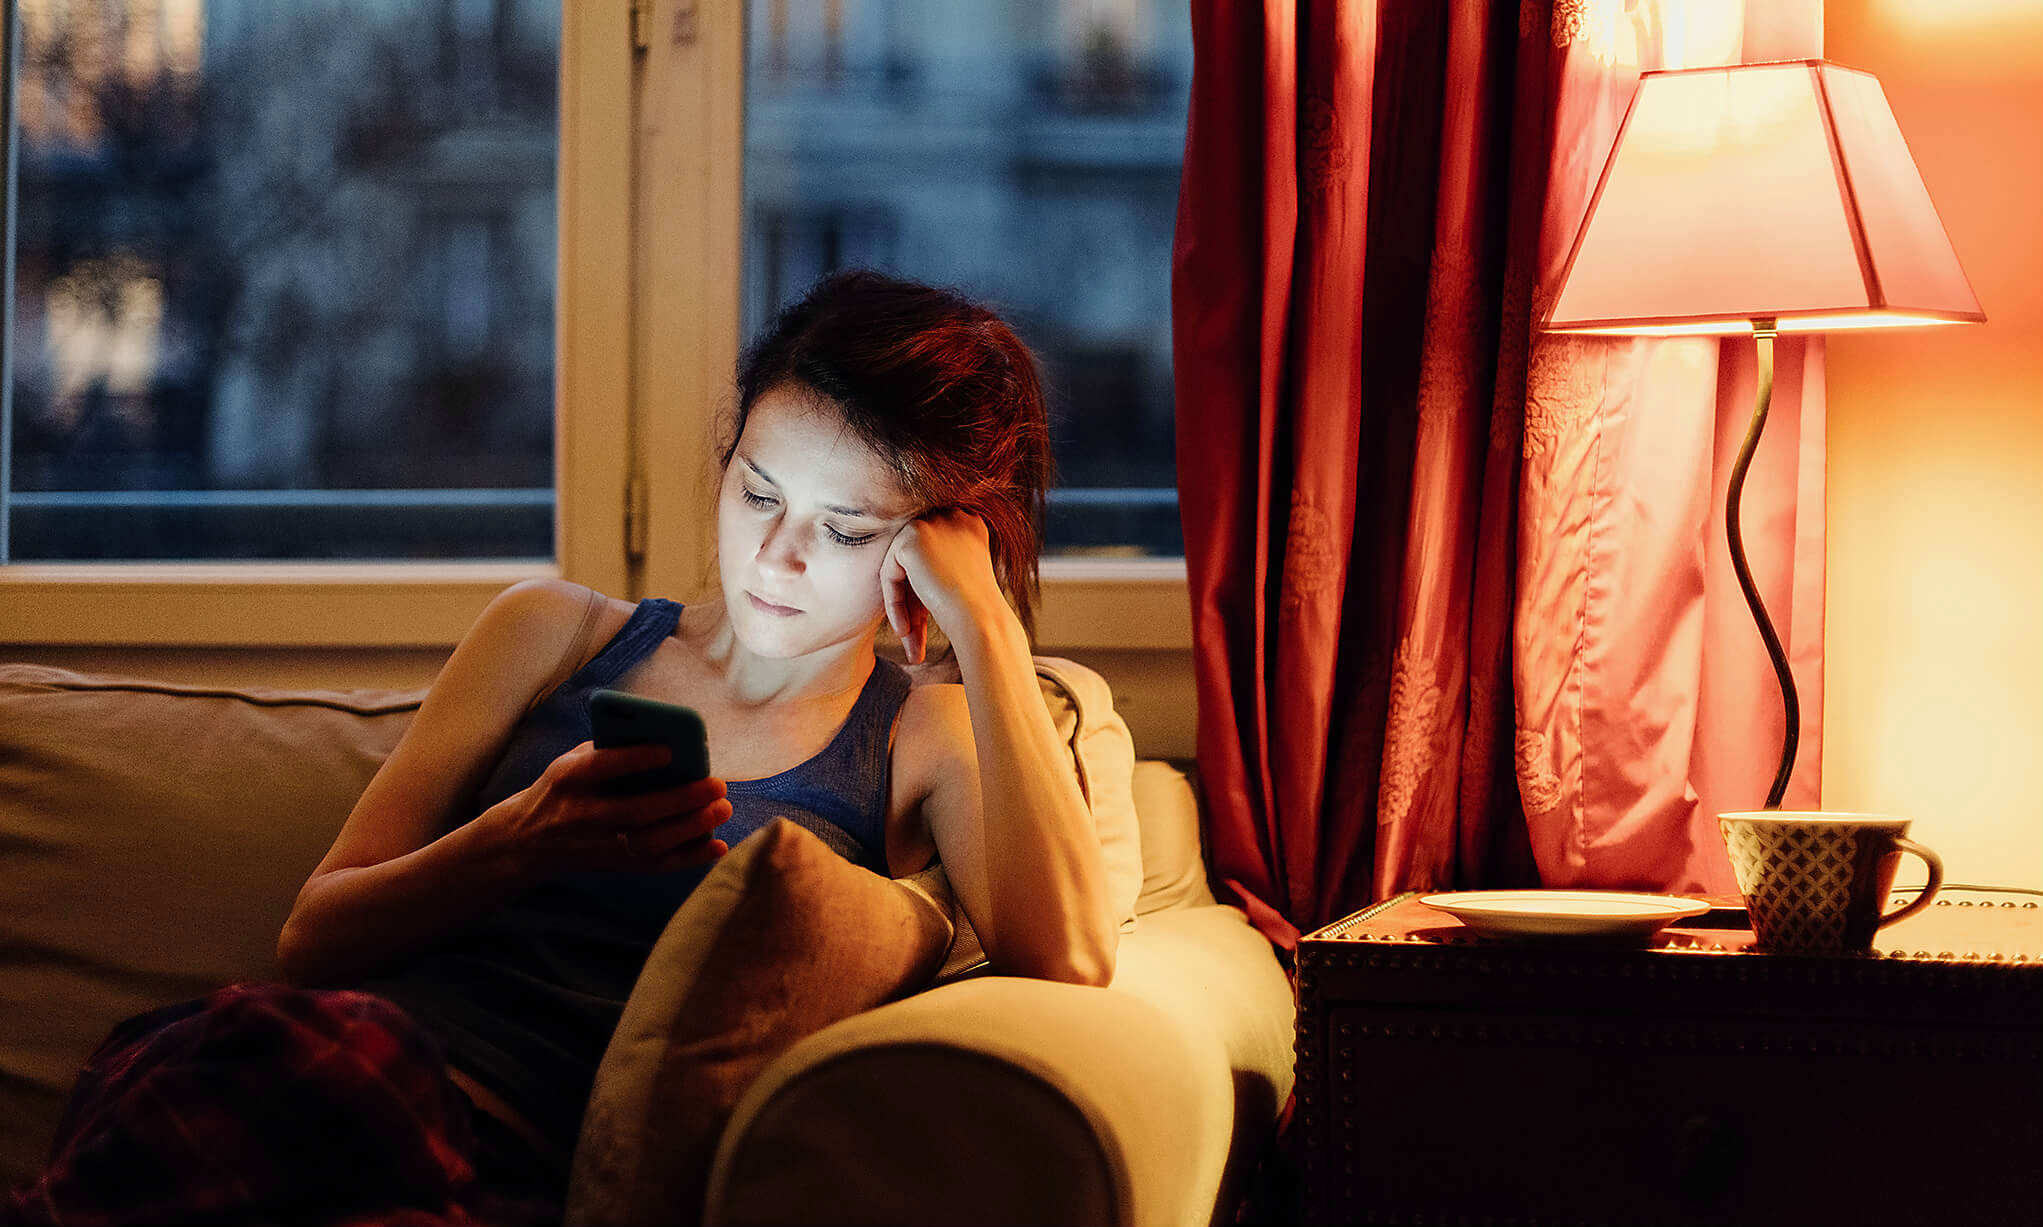 ზრდის თუ არა „ფეისბუქის“ გამოყენება მარტოხელობის განცდას? - ახალი კვლევის შედეგი